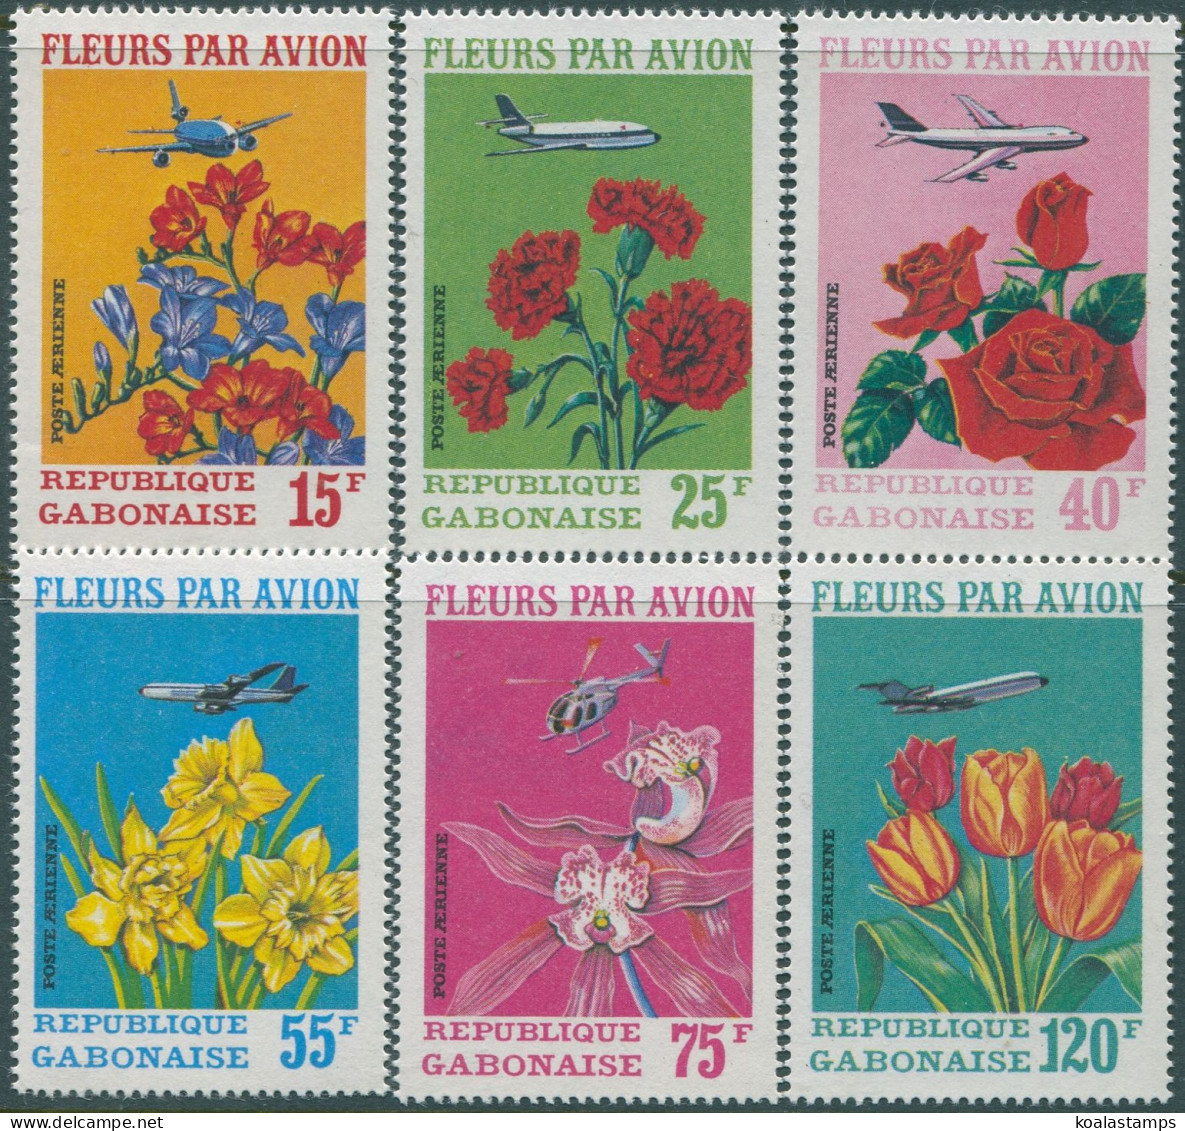 Gabon 1971 SG410-415 Flowers Set MNH - Gabon